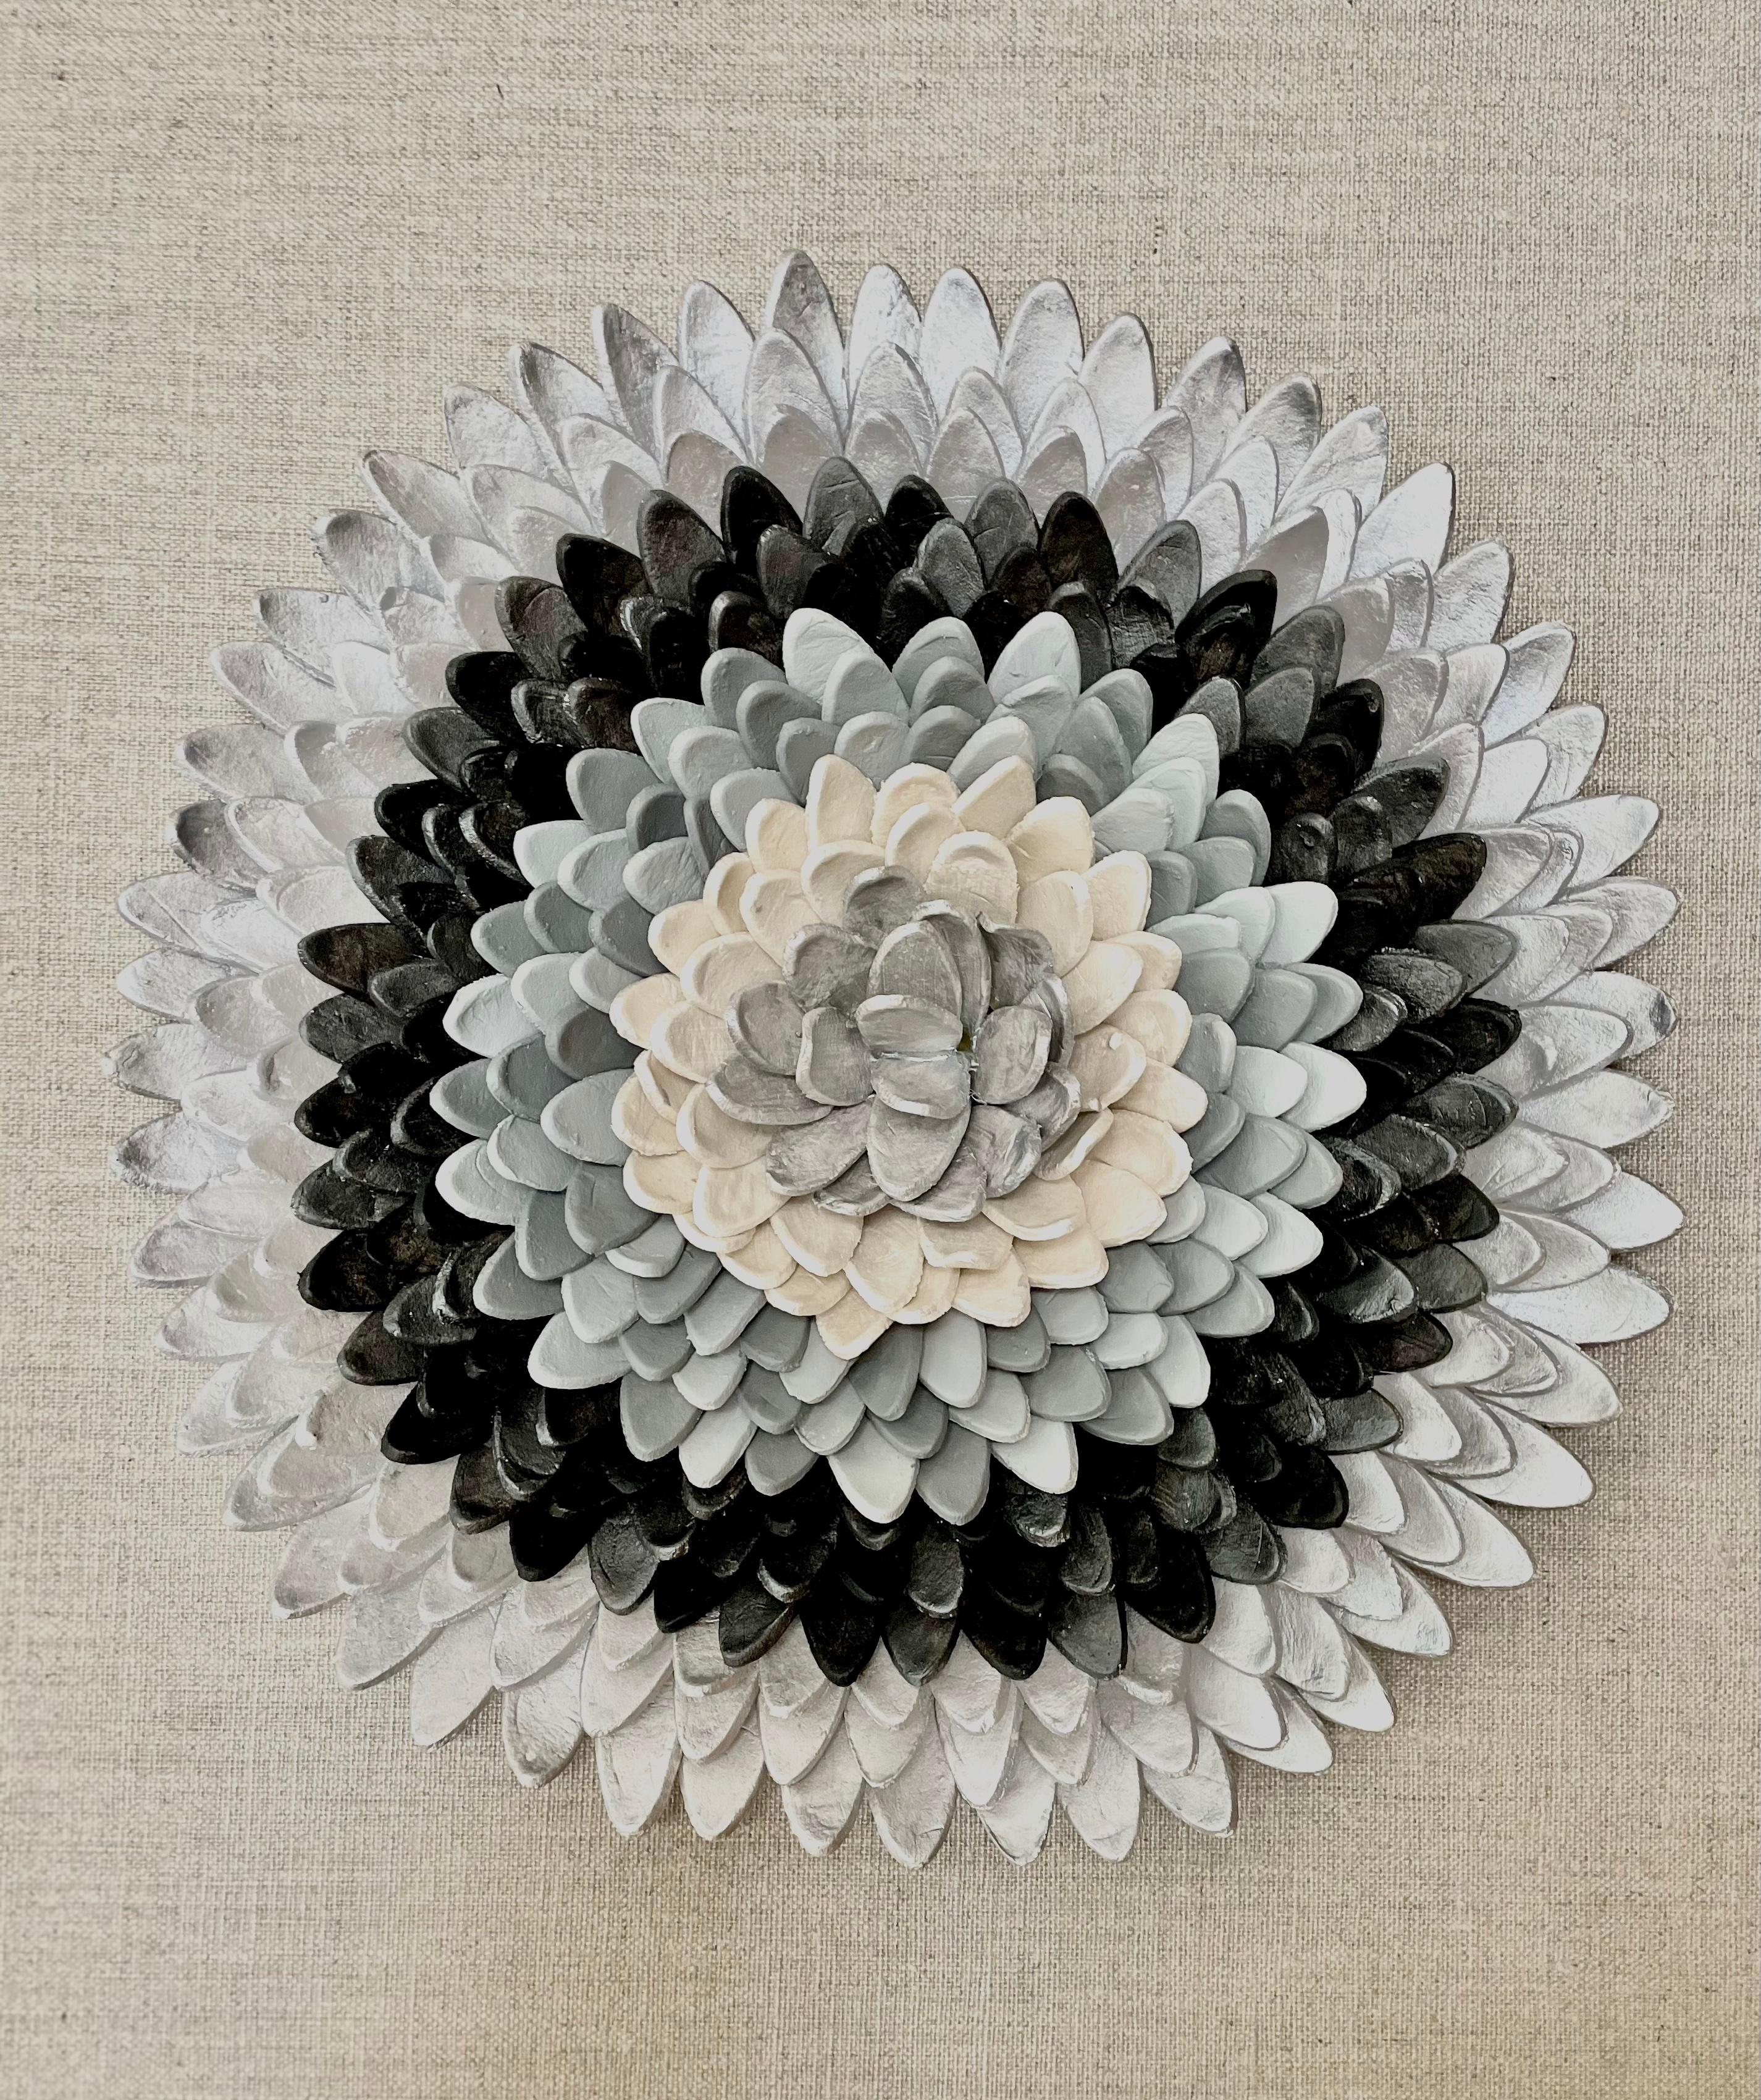 Flos 1 - composition en argile argentée grise à motifs floraux inspirés de la nature en 3D dans une boîte en plexiglas